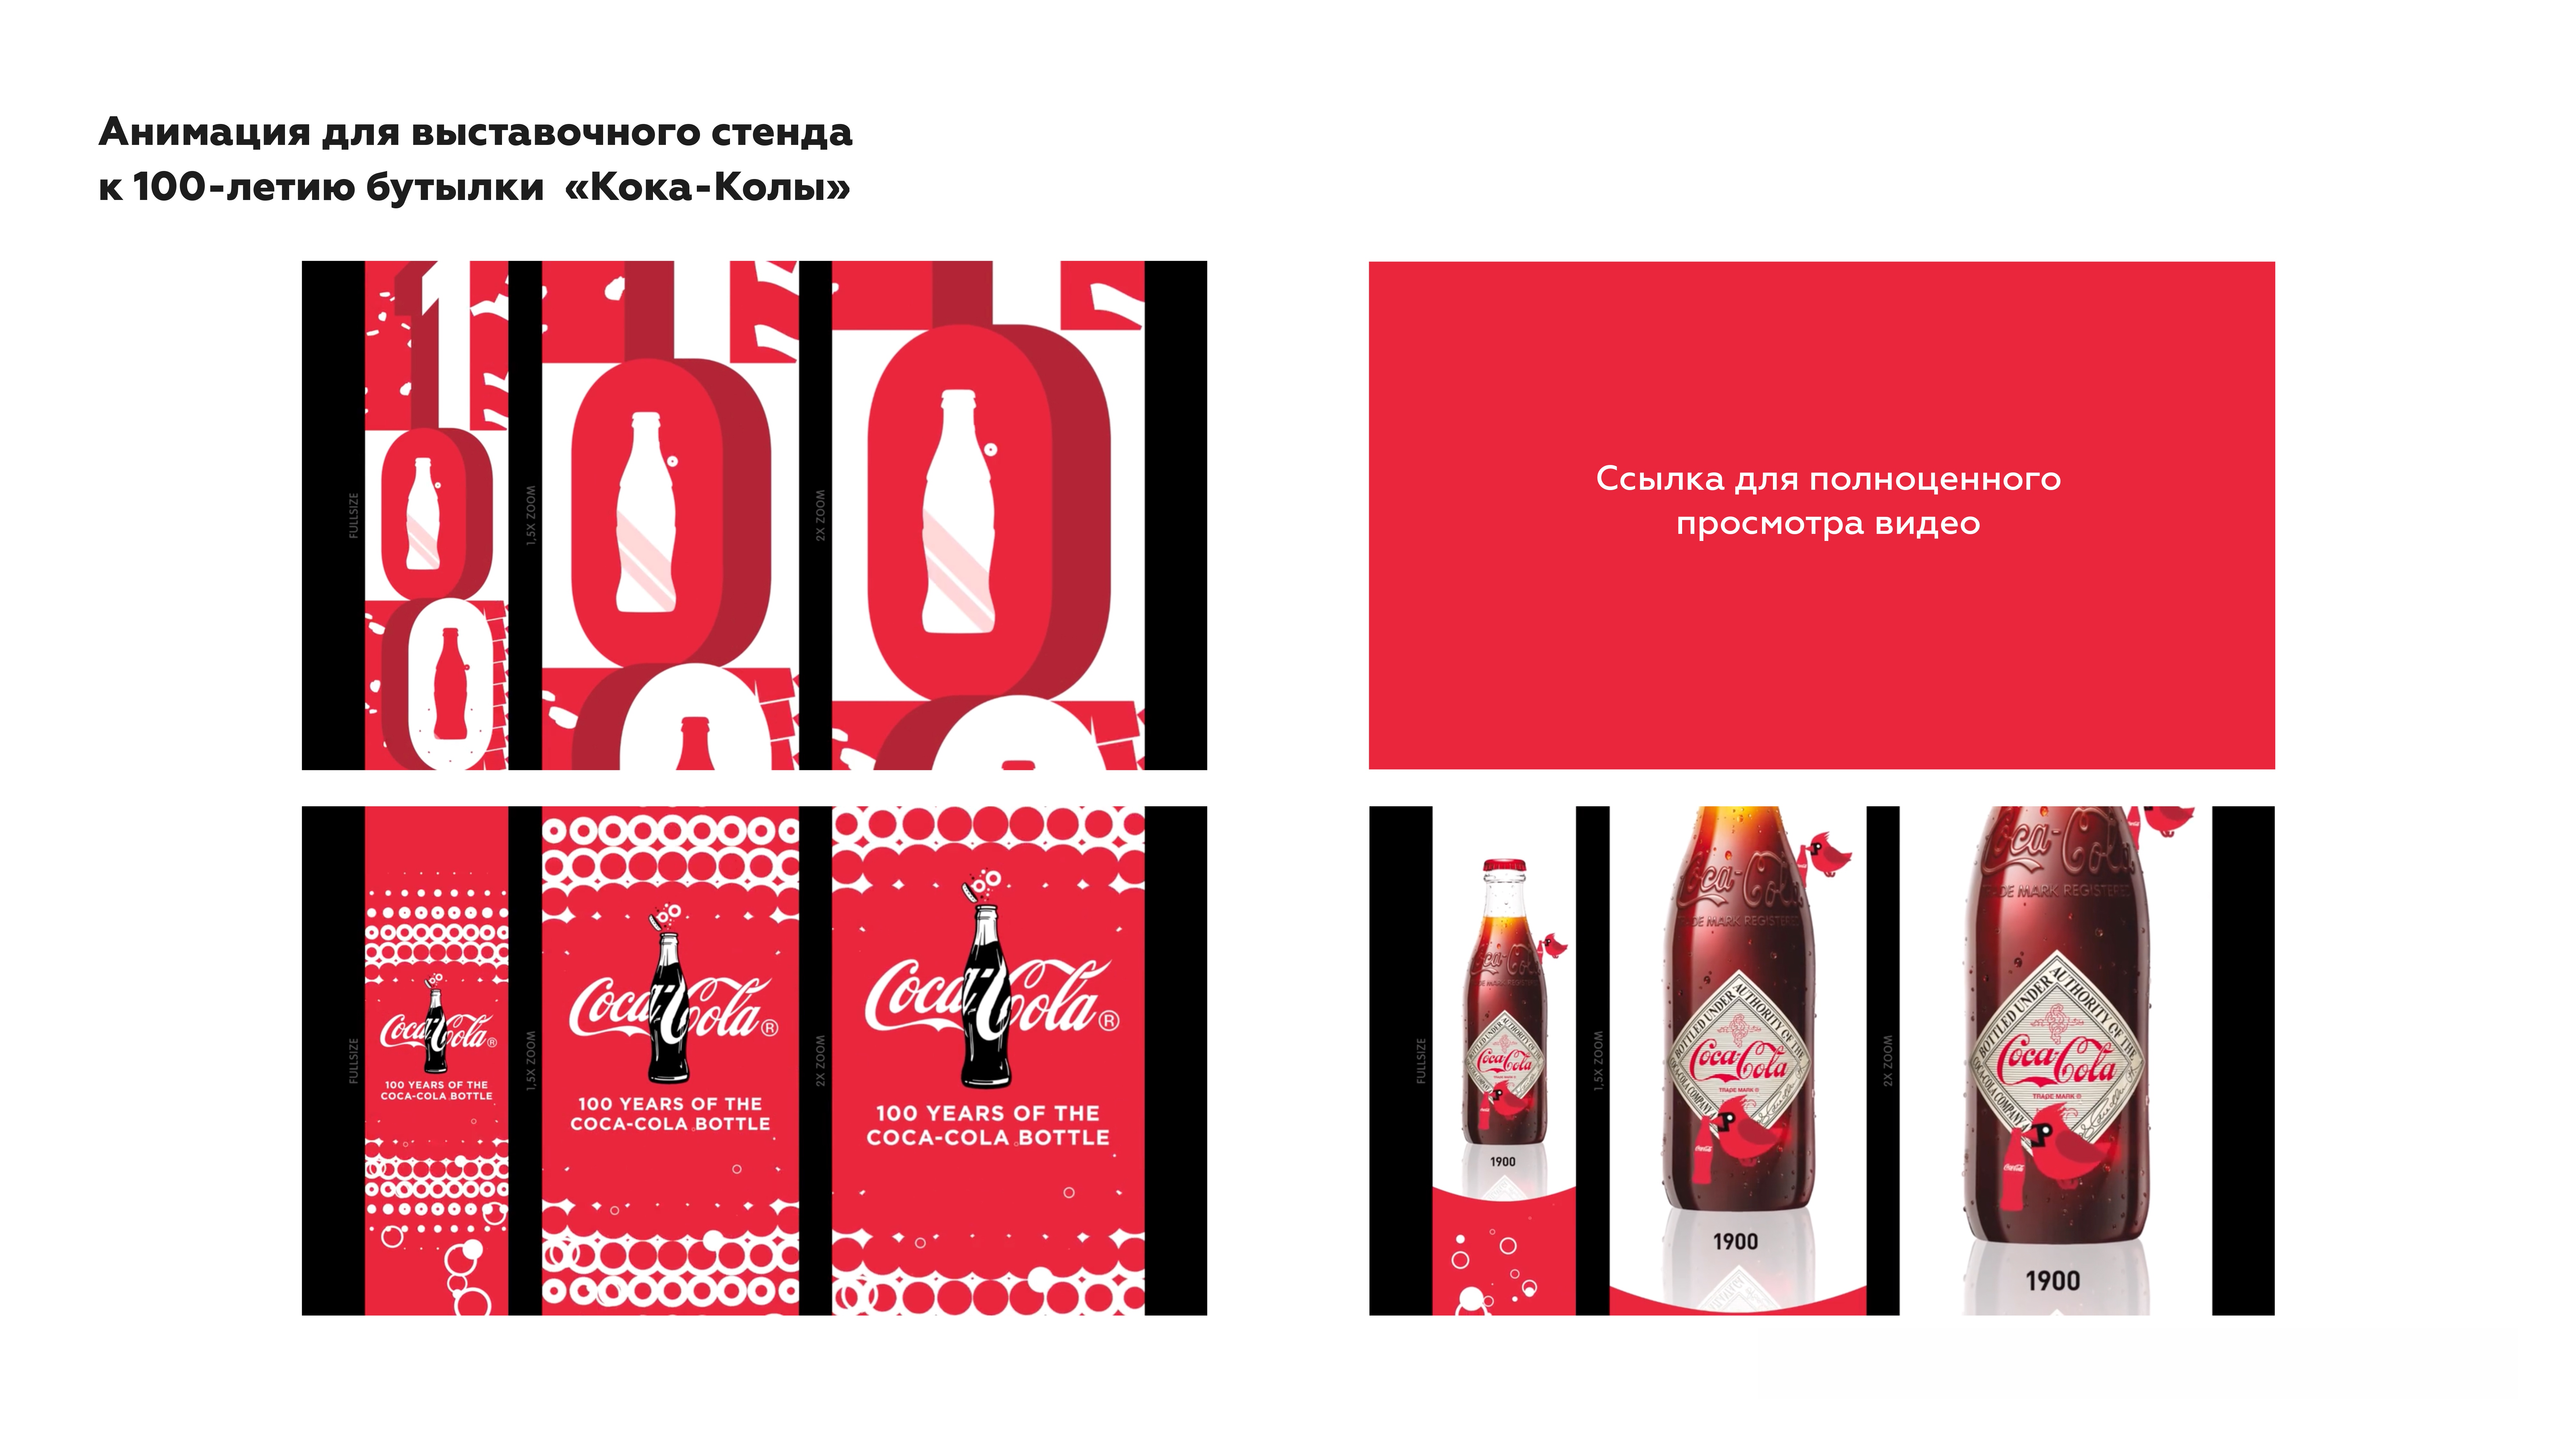 Анимация для выставочного центра к 100-летию бутылки "Кока-кола"